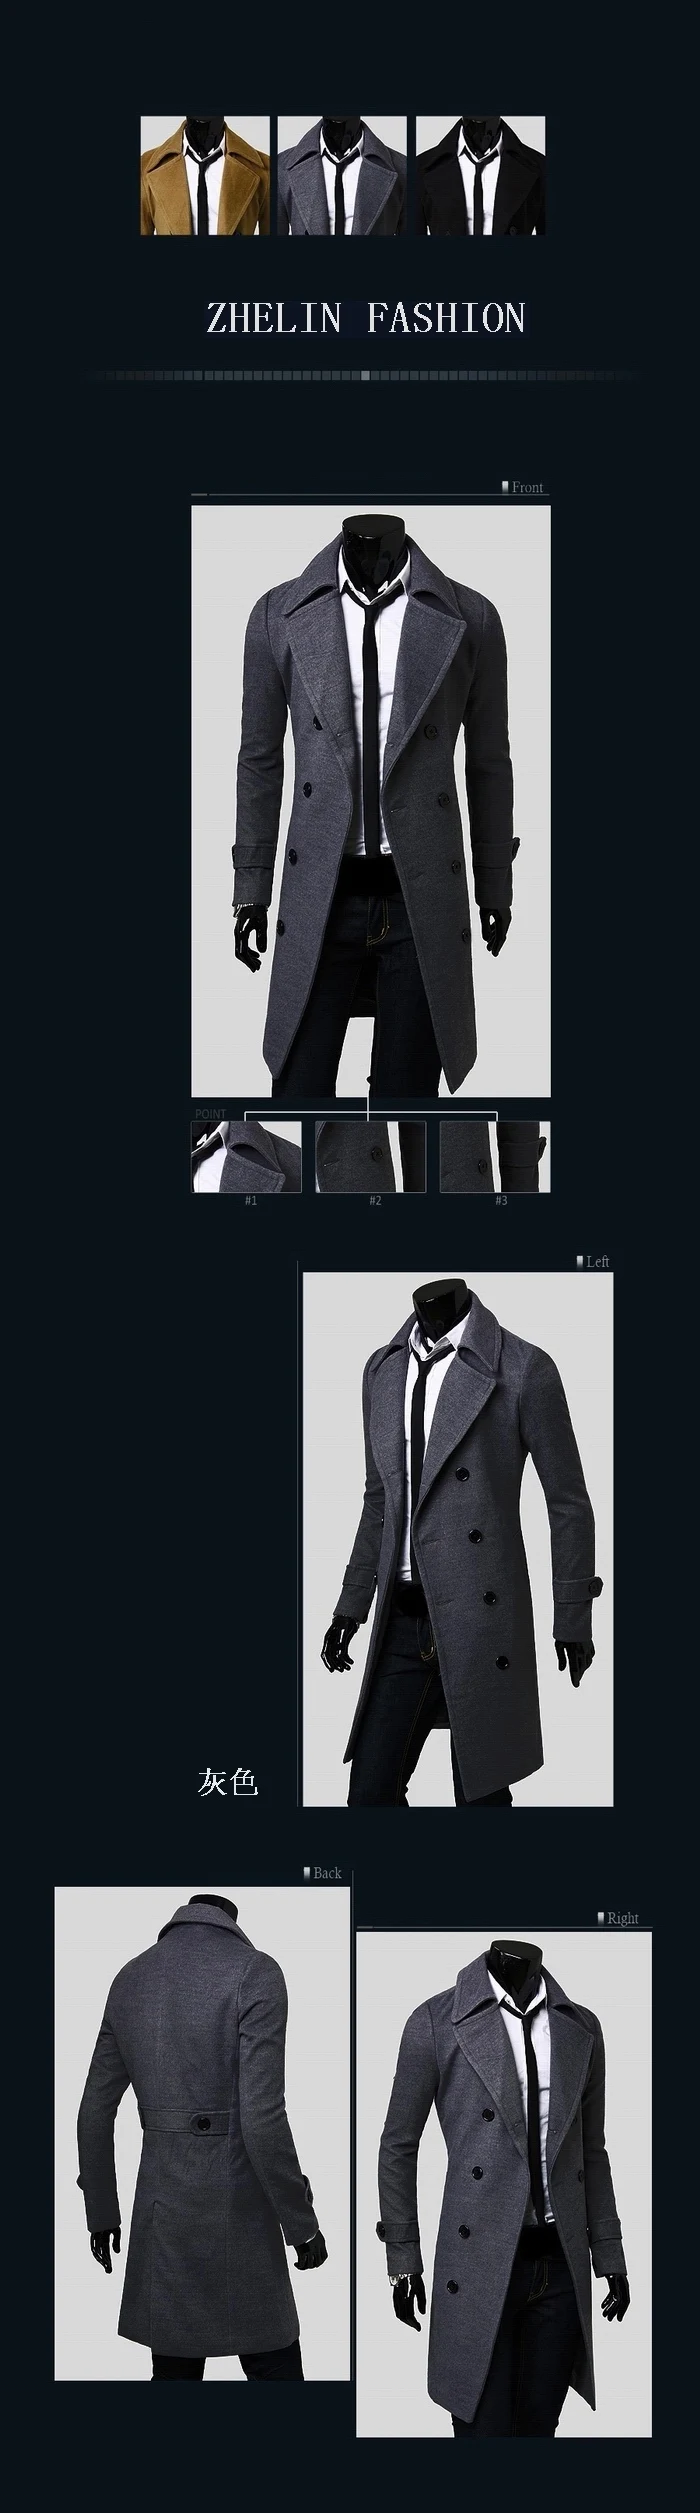 Мужской Уникальный тонкий двусторонний Курукшетра верхняя одежда Длинный дизайн двубортное шерстяное пальто, Мужская модная одежда плюс размер M xxxl